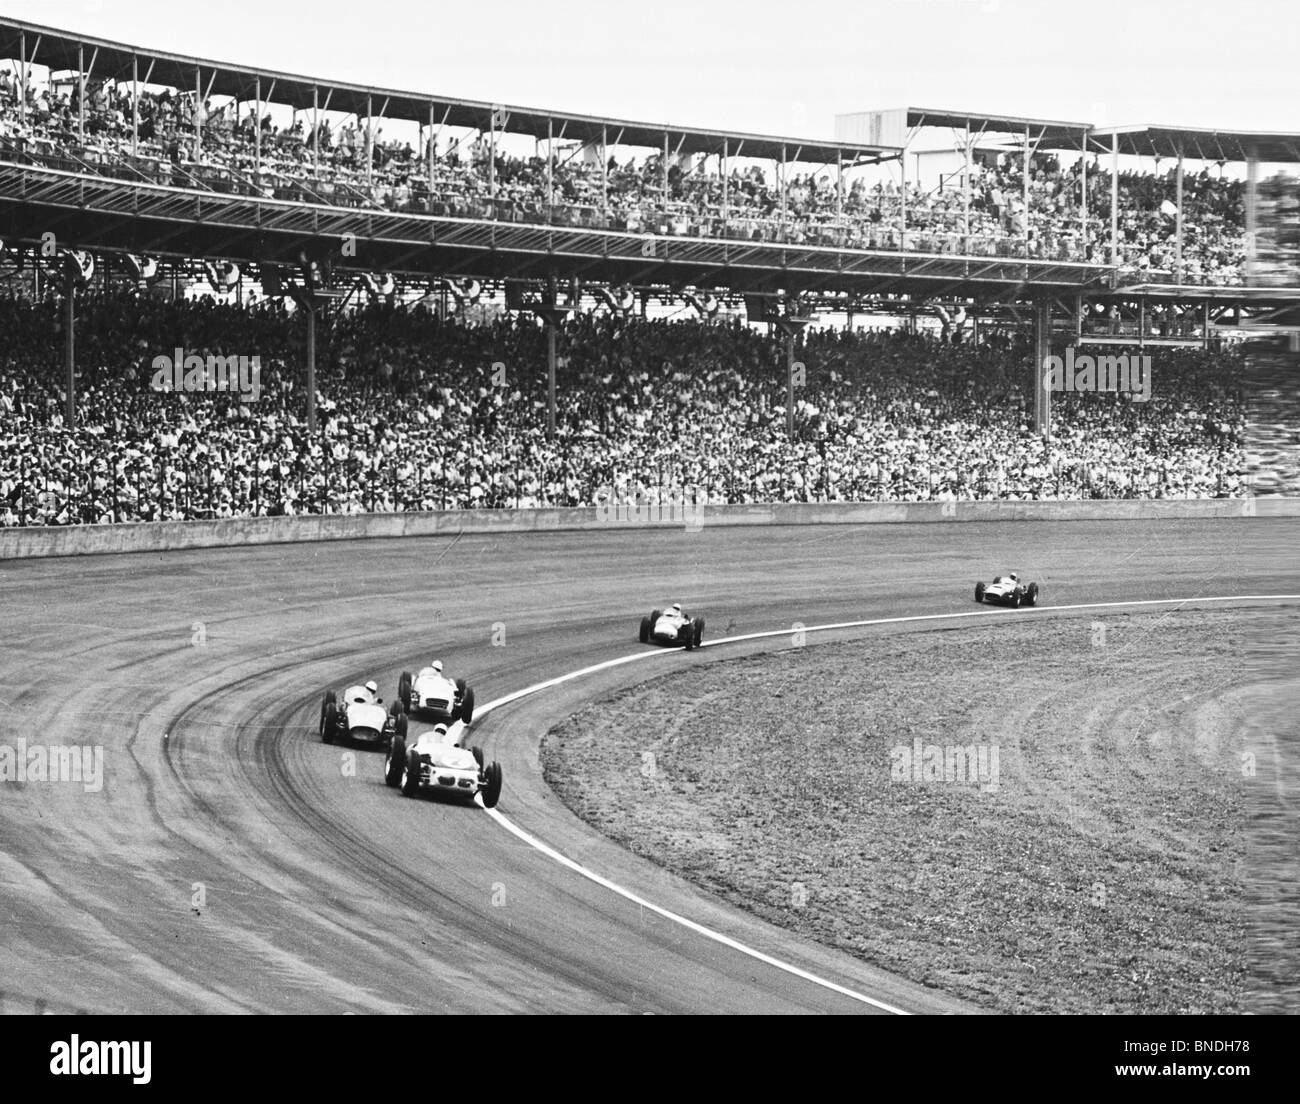 Voitures de course de Formule 1 sur une piste de course, Indianapolis 500, Indianapolis, Indiana, USA Banque D'Images